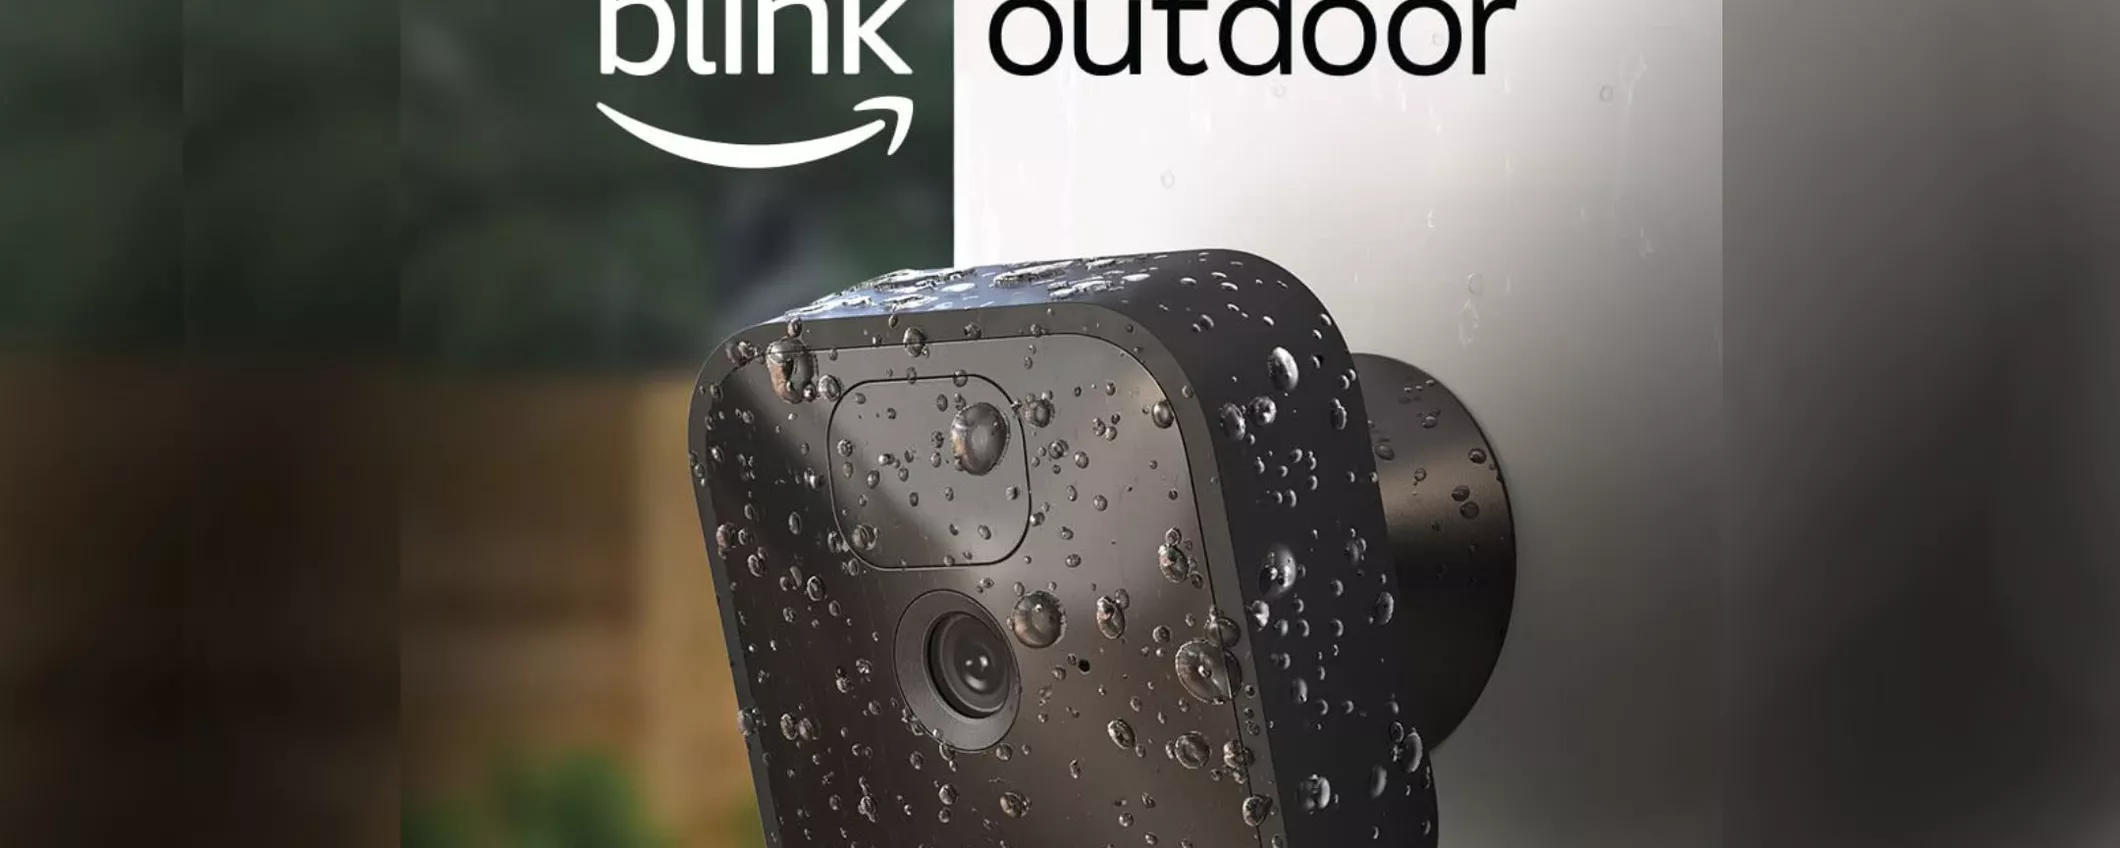 CONTINUA il Black Friday: Blink Outdoor costa il 55% in meno su Amazon!